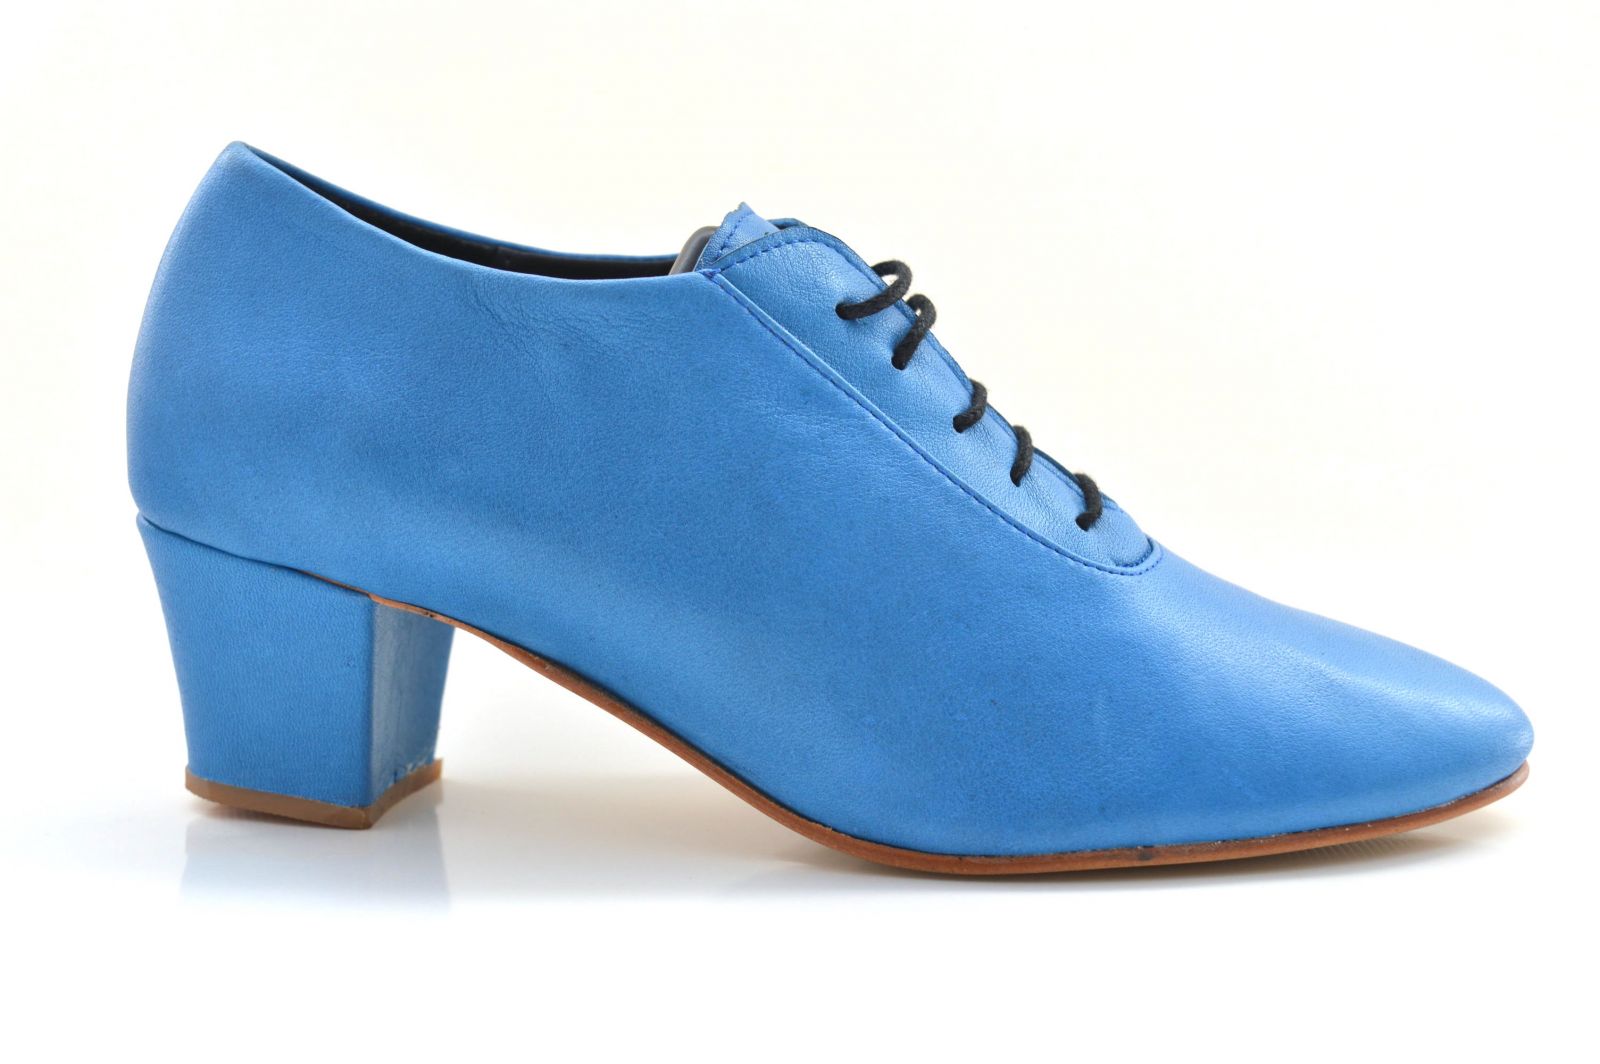 Γυναικείο παπούτσι tango κλειστού τύπου από πολύ μαλακό μπλε δέρμα